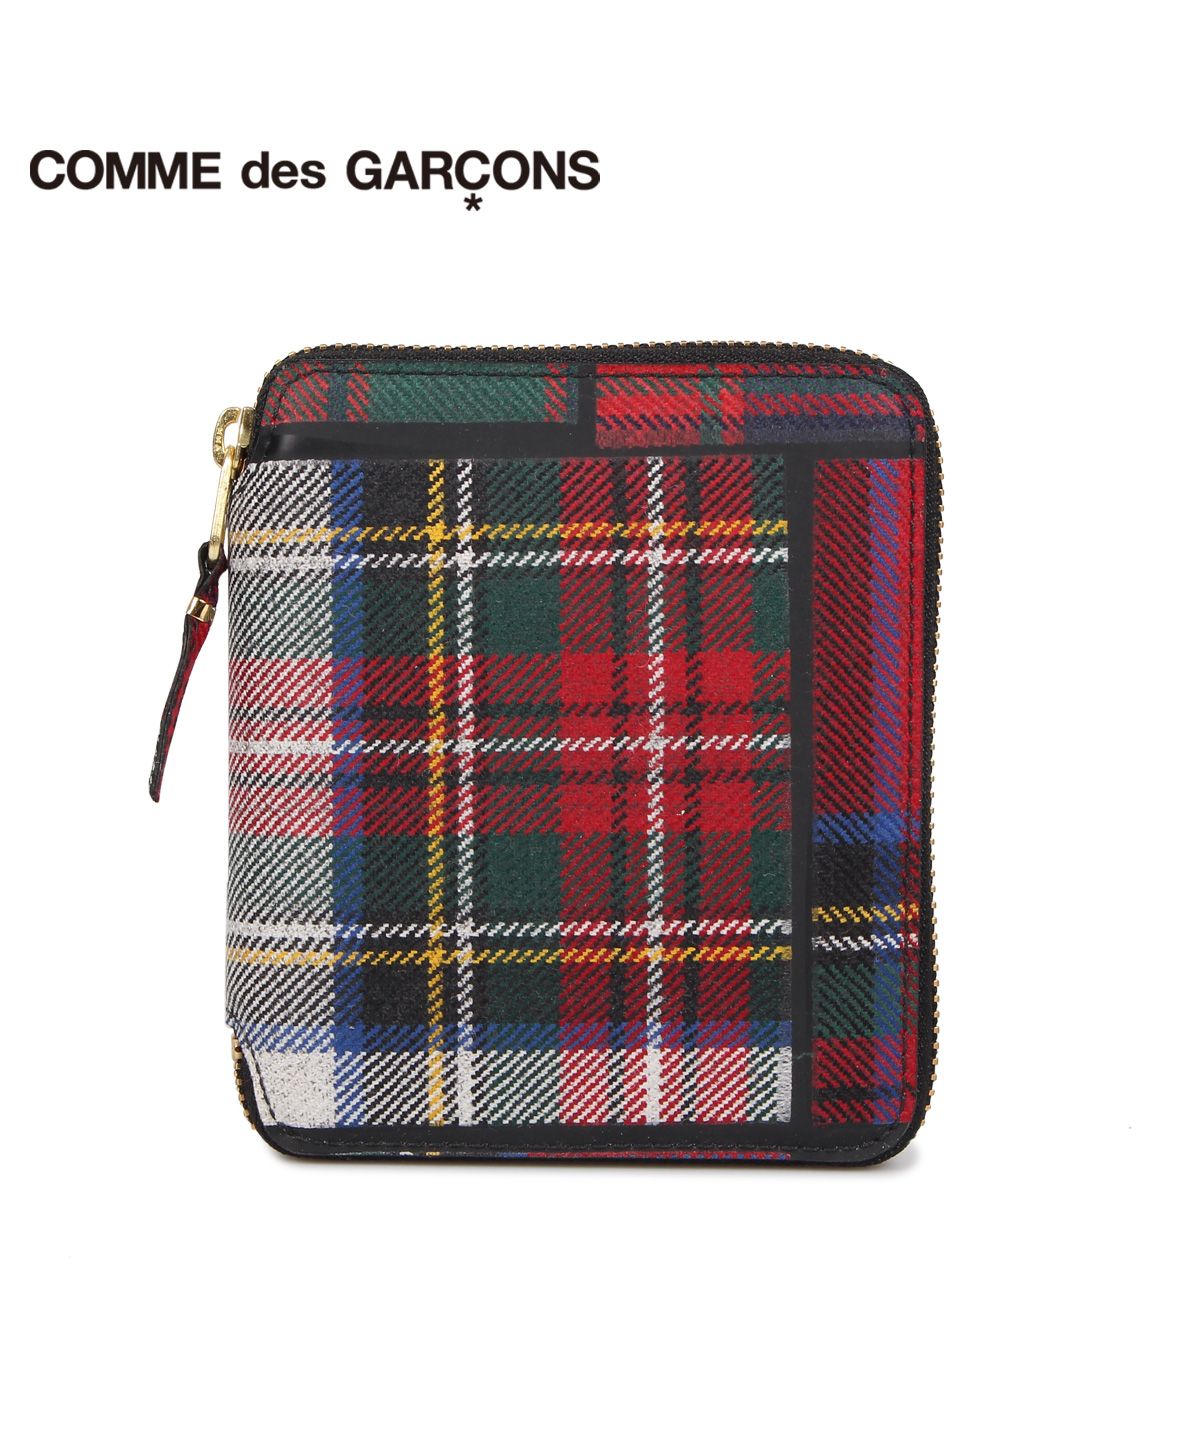 コムデギャルソン COMME des GARCONS 財布 二つ折り メンズ レディース 